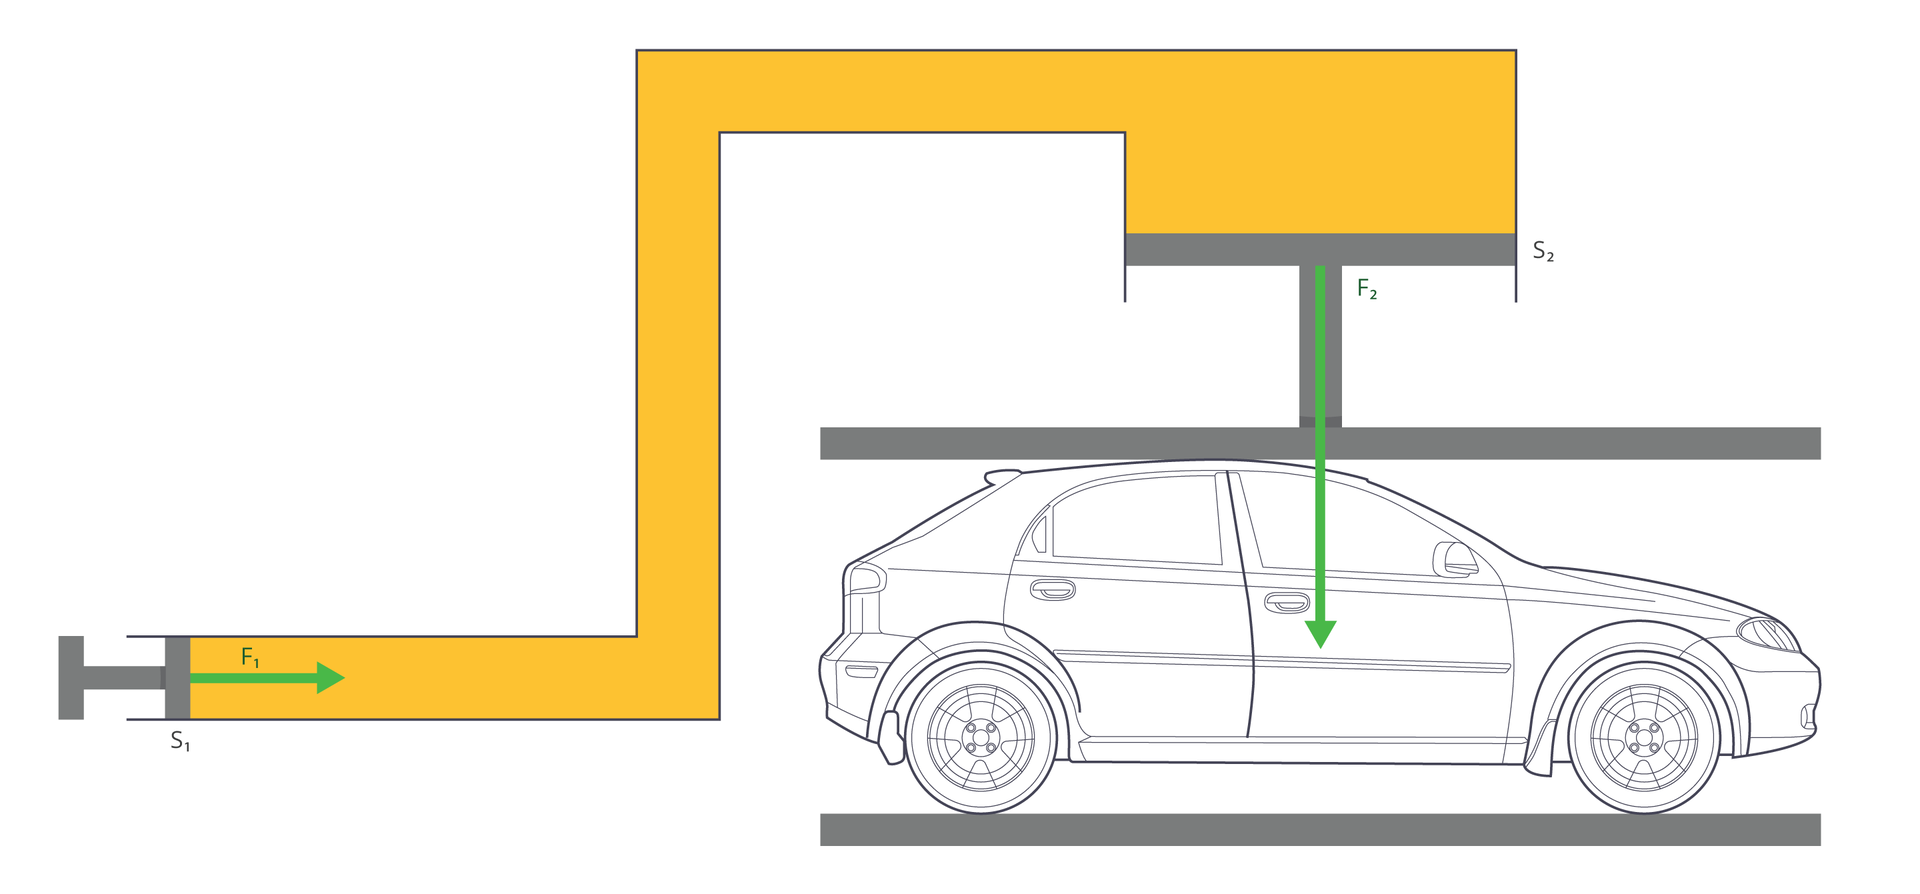 Ilustracja przedstawia schemat prasy hydraulicznej. Tło białe. Prasa żółta. Pod prasą znajduje się samochód osobowy. Z lewej strony prazy znajduje się tłok pełniący funkcję pompy. Z prawej strony, nad samochodem, tłok roboczy.